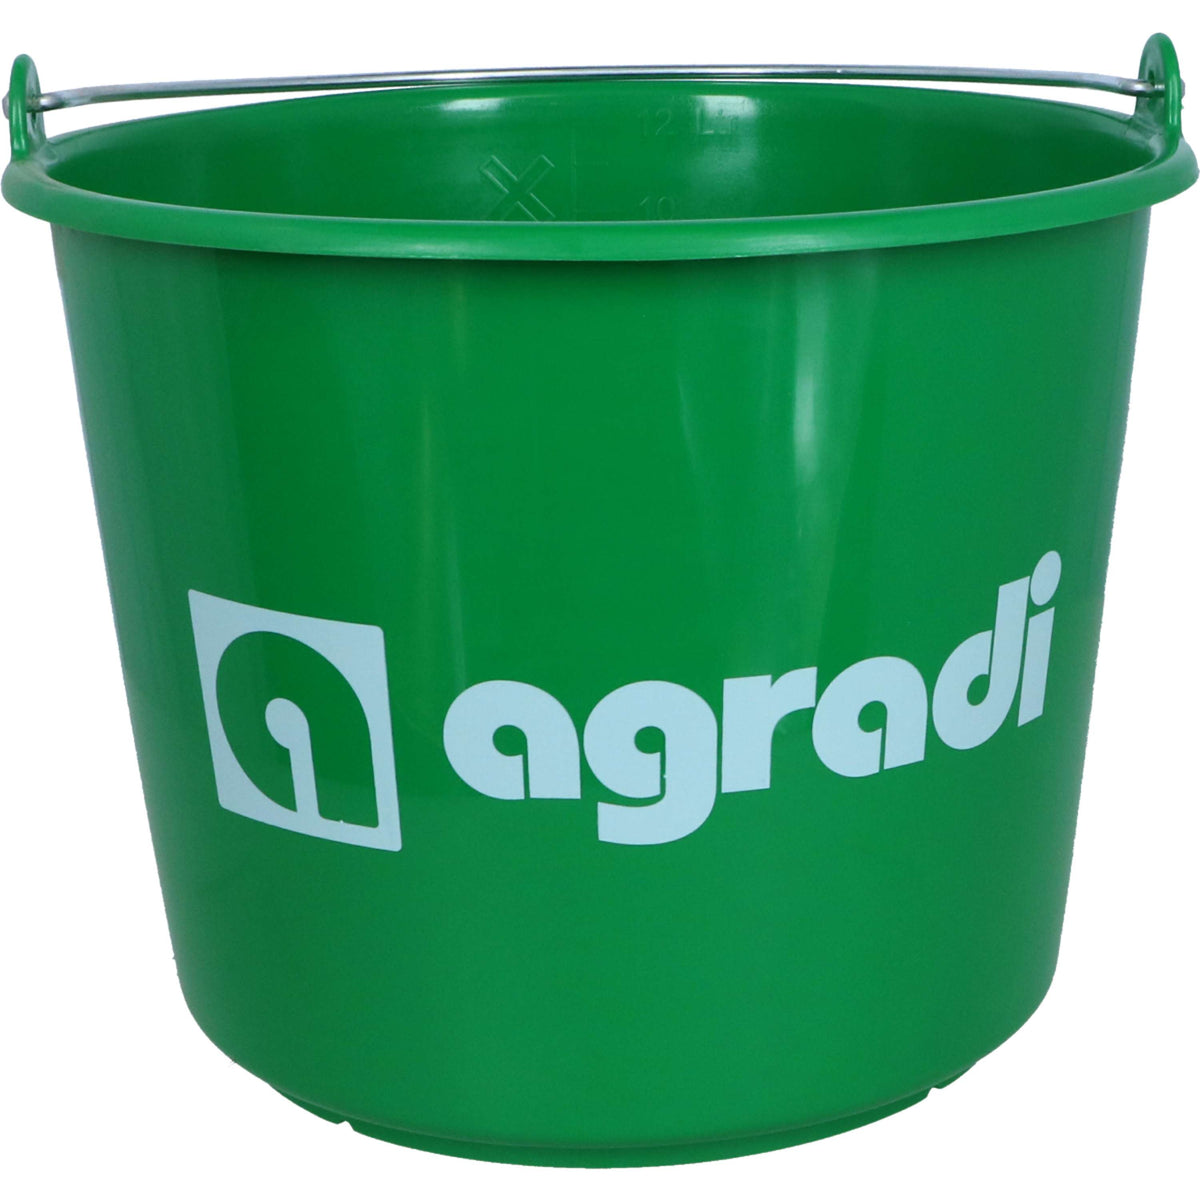 Agradi Eimer mit Logo Grün